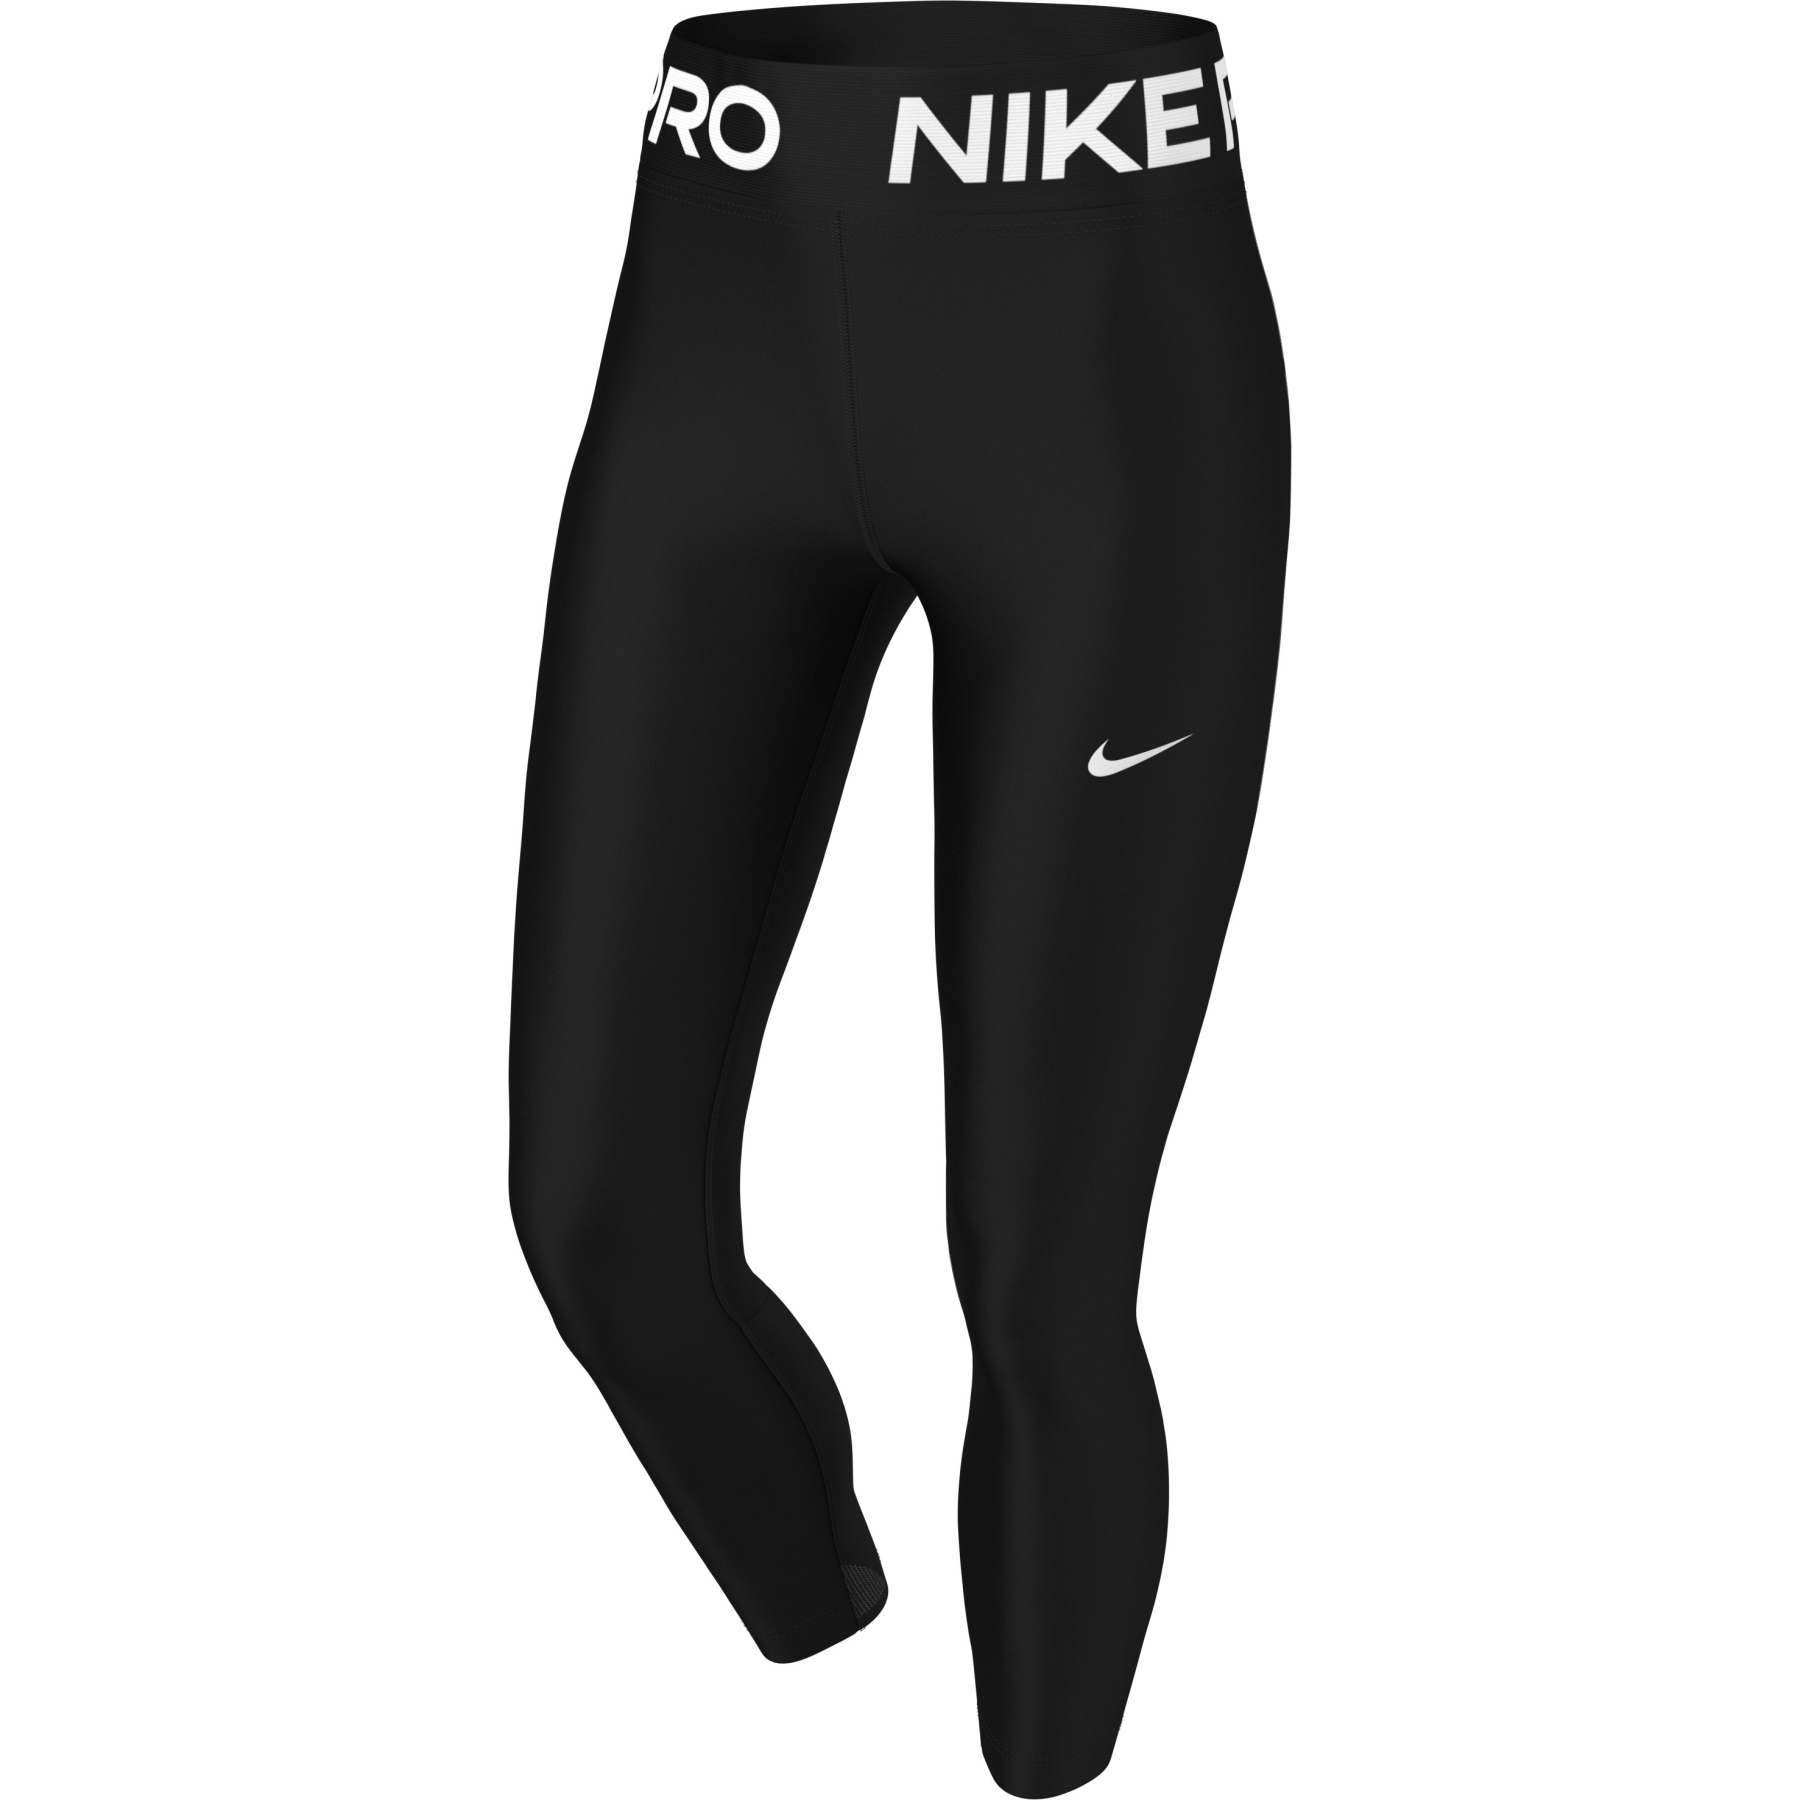 Produktbild von Nike Pro 365 Damenleggings 7/8 - schwarz/weiß DA0483-013